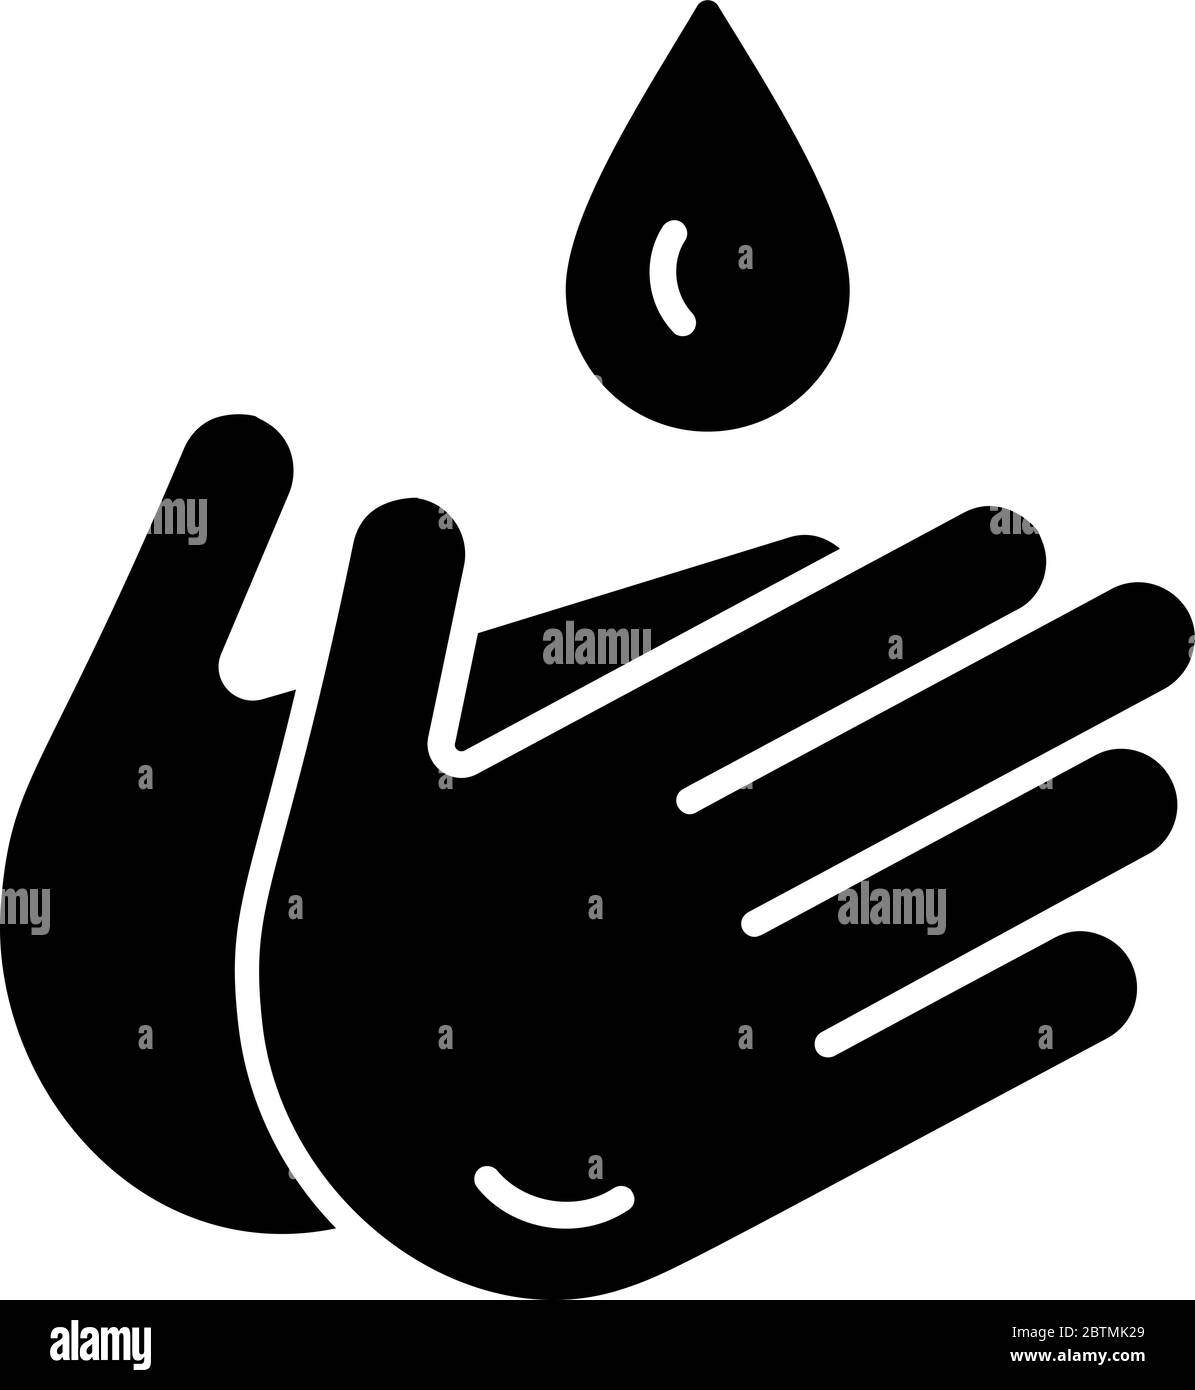 Vecteur d'icône noir de goutte d'eau et de main. Pictogramme de signe contour isolé sur blanc. Symbole, logo illustration du concept de bactéries coronavirus Covid-19 Illustration de Vecteur